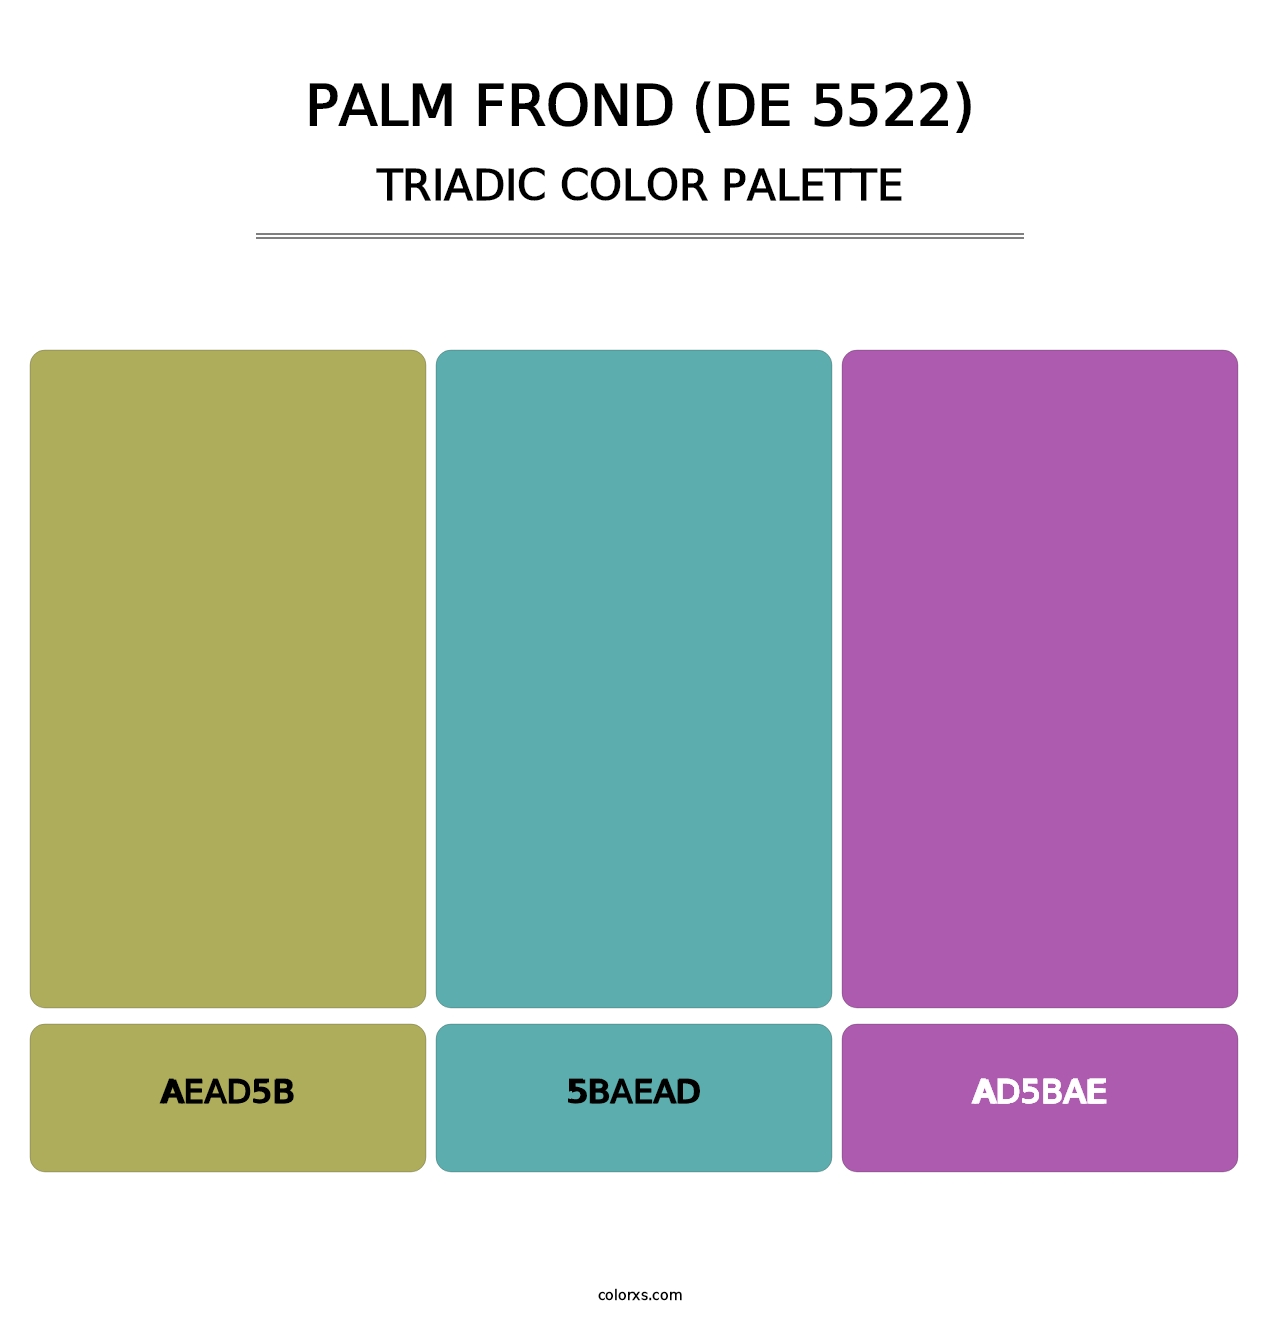 Palm Frond (DE 5522) - Triadic Color Palette